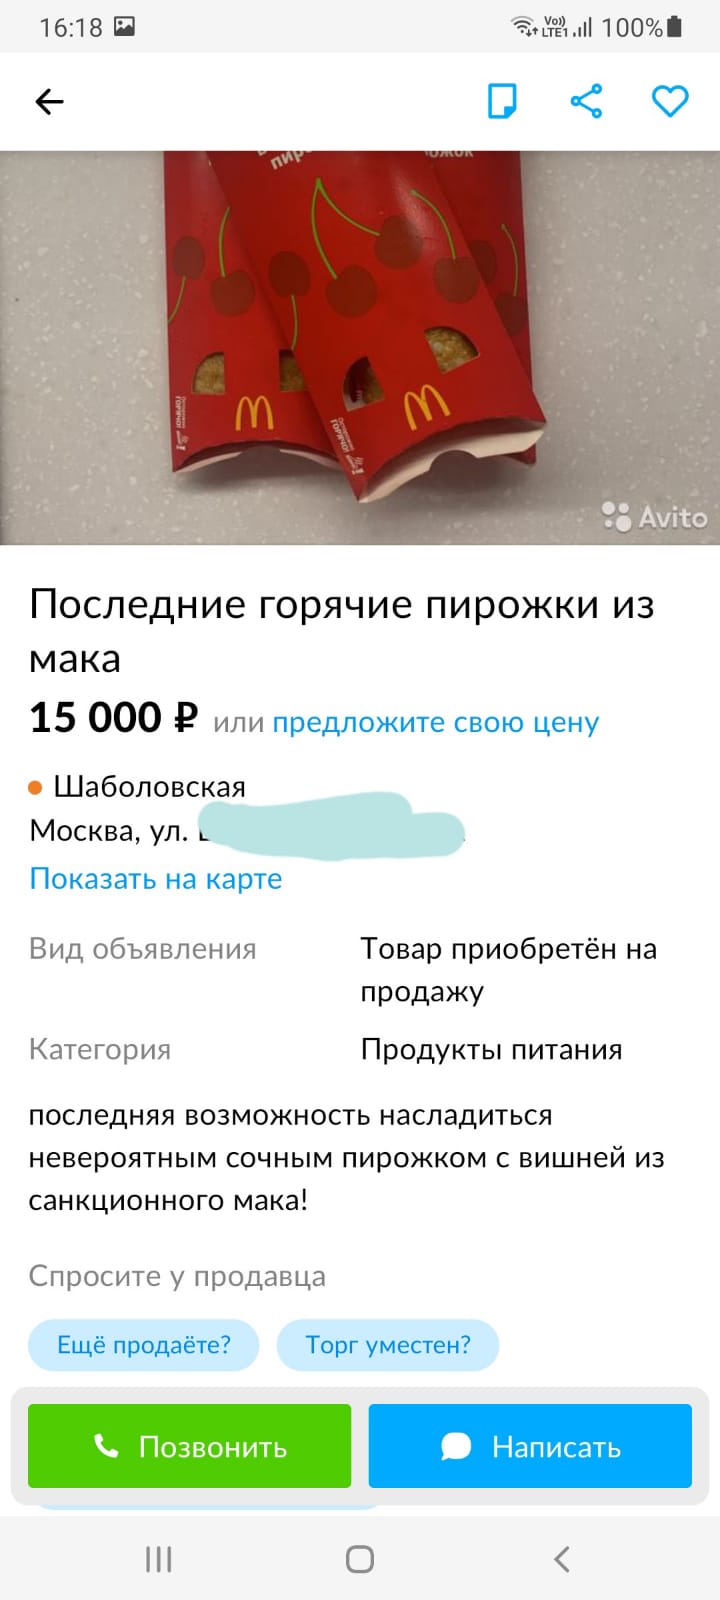 Россиянам предлагают напоследок отведать знаменитый пирожок с вишней